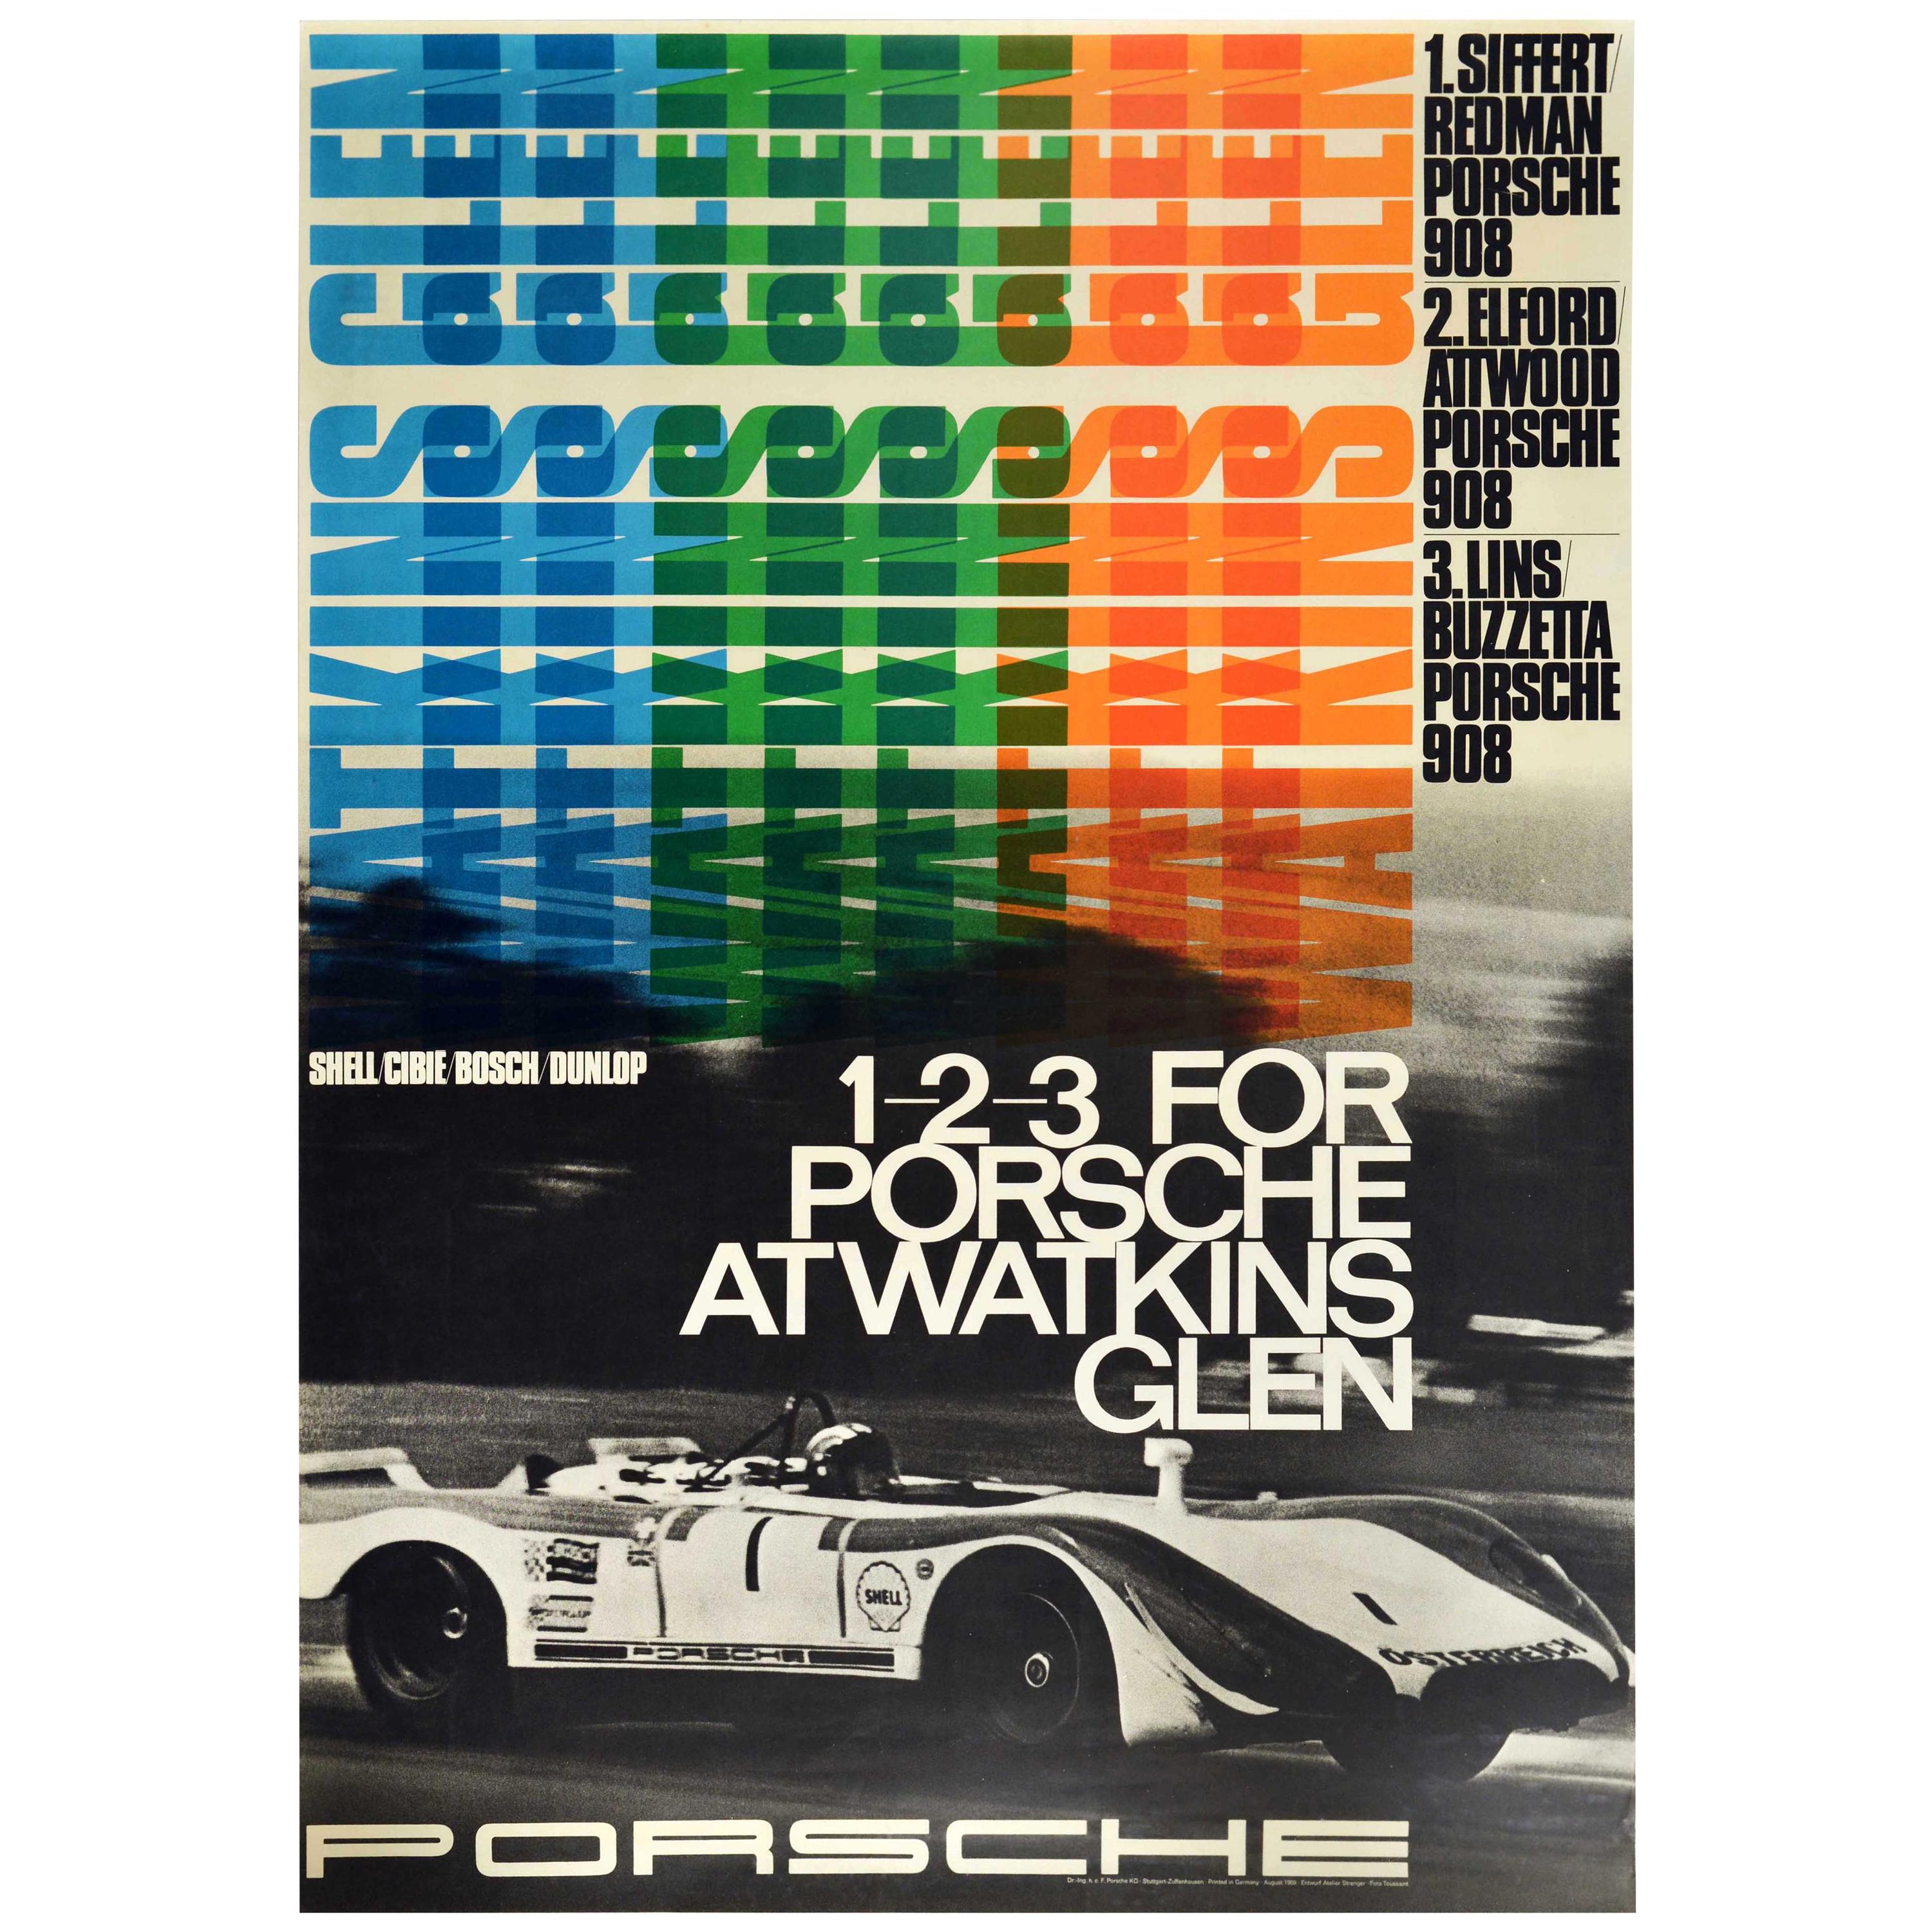 Original Vintage Auto Racing Poster 1-2-3 For Porsche At Watkins Glen Motorsport